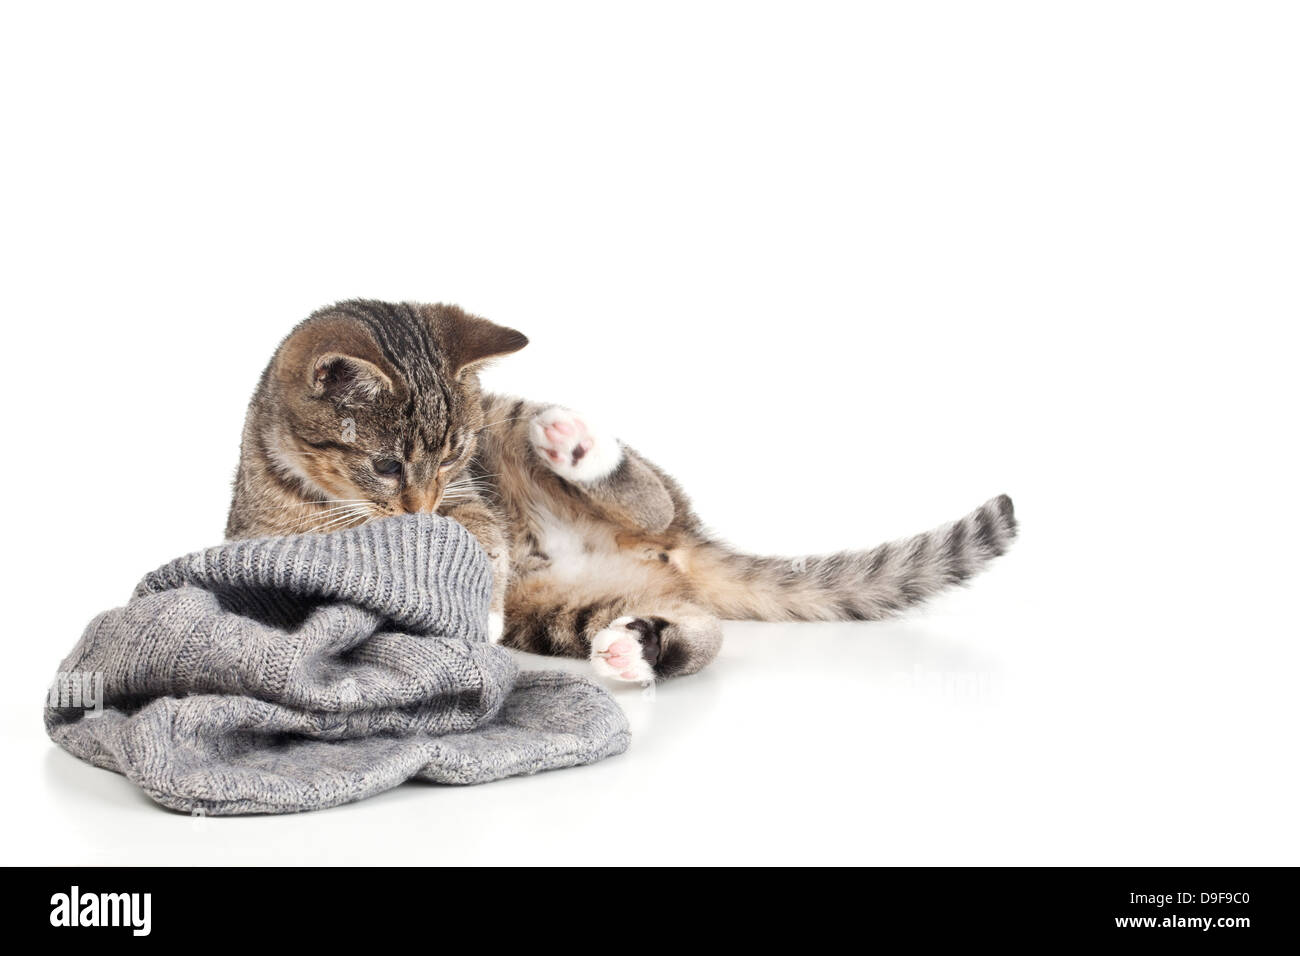 Jeune chat joue avec un sac de laine, mastics jouant avec un sac de laine Banque D'Images